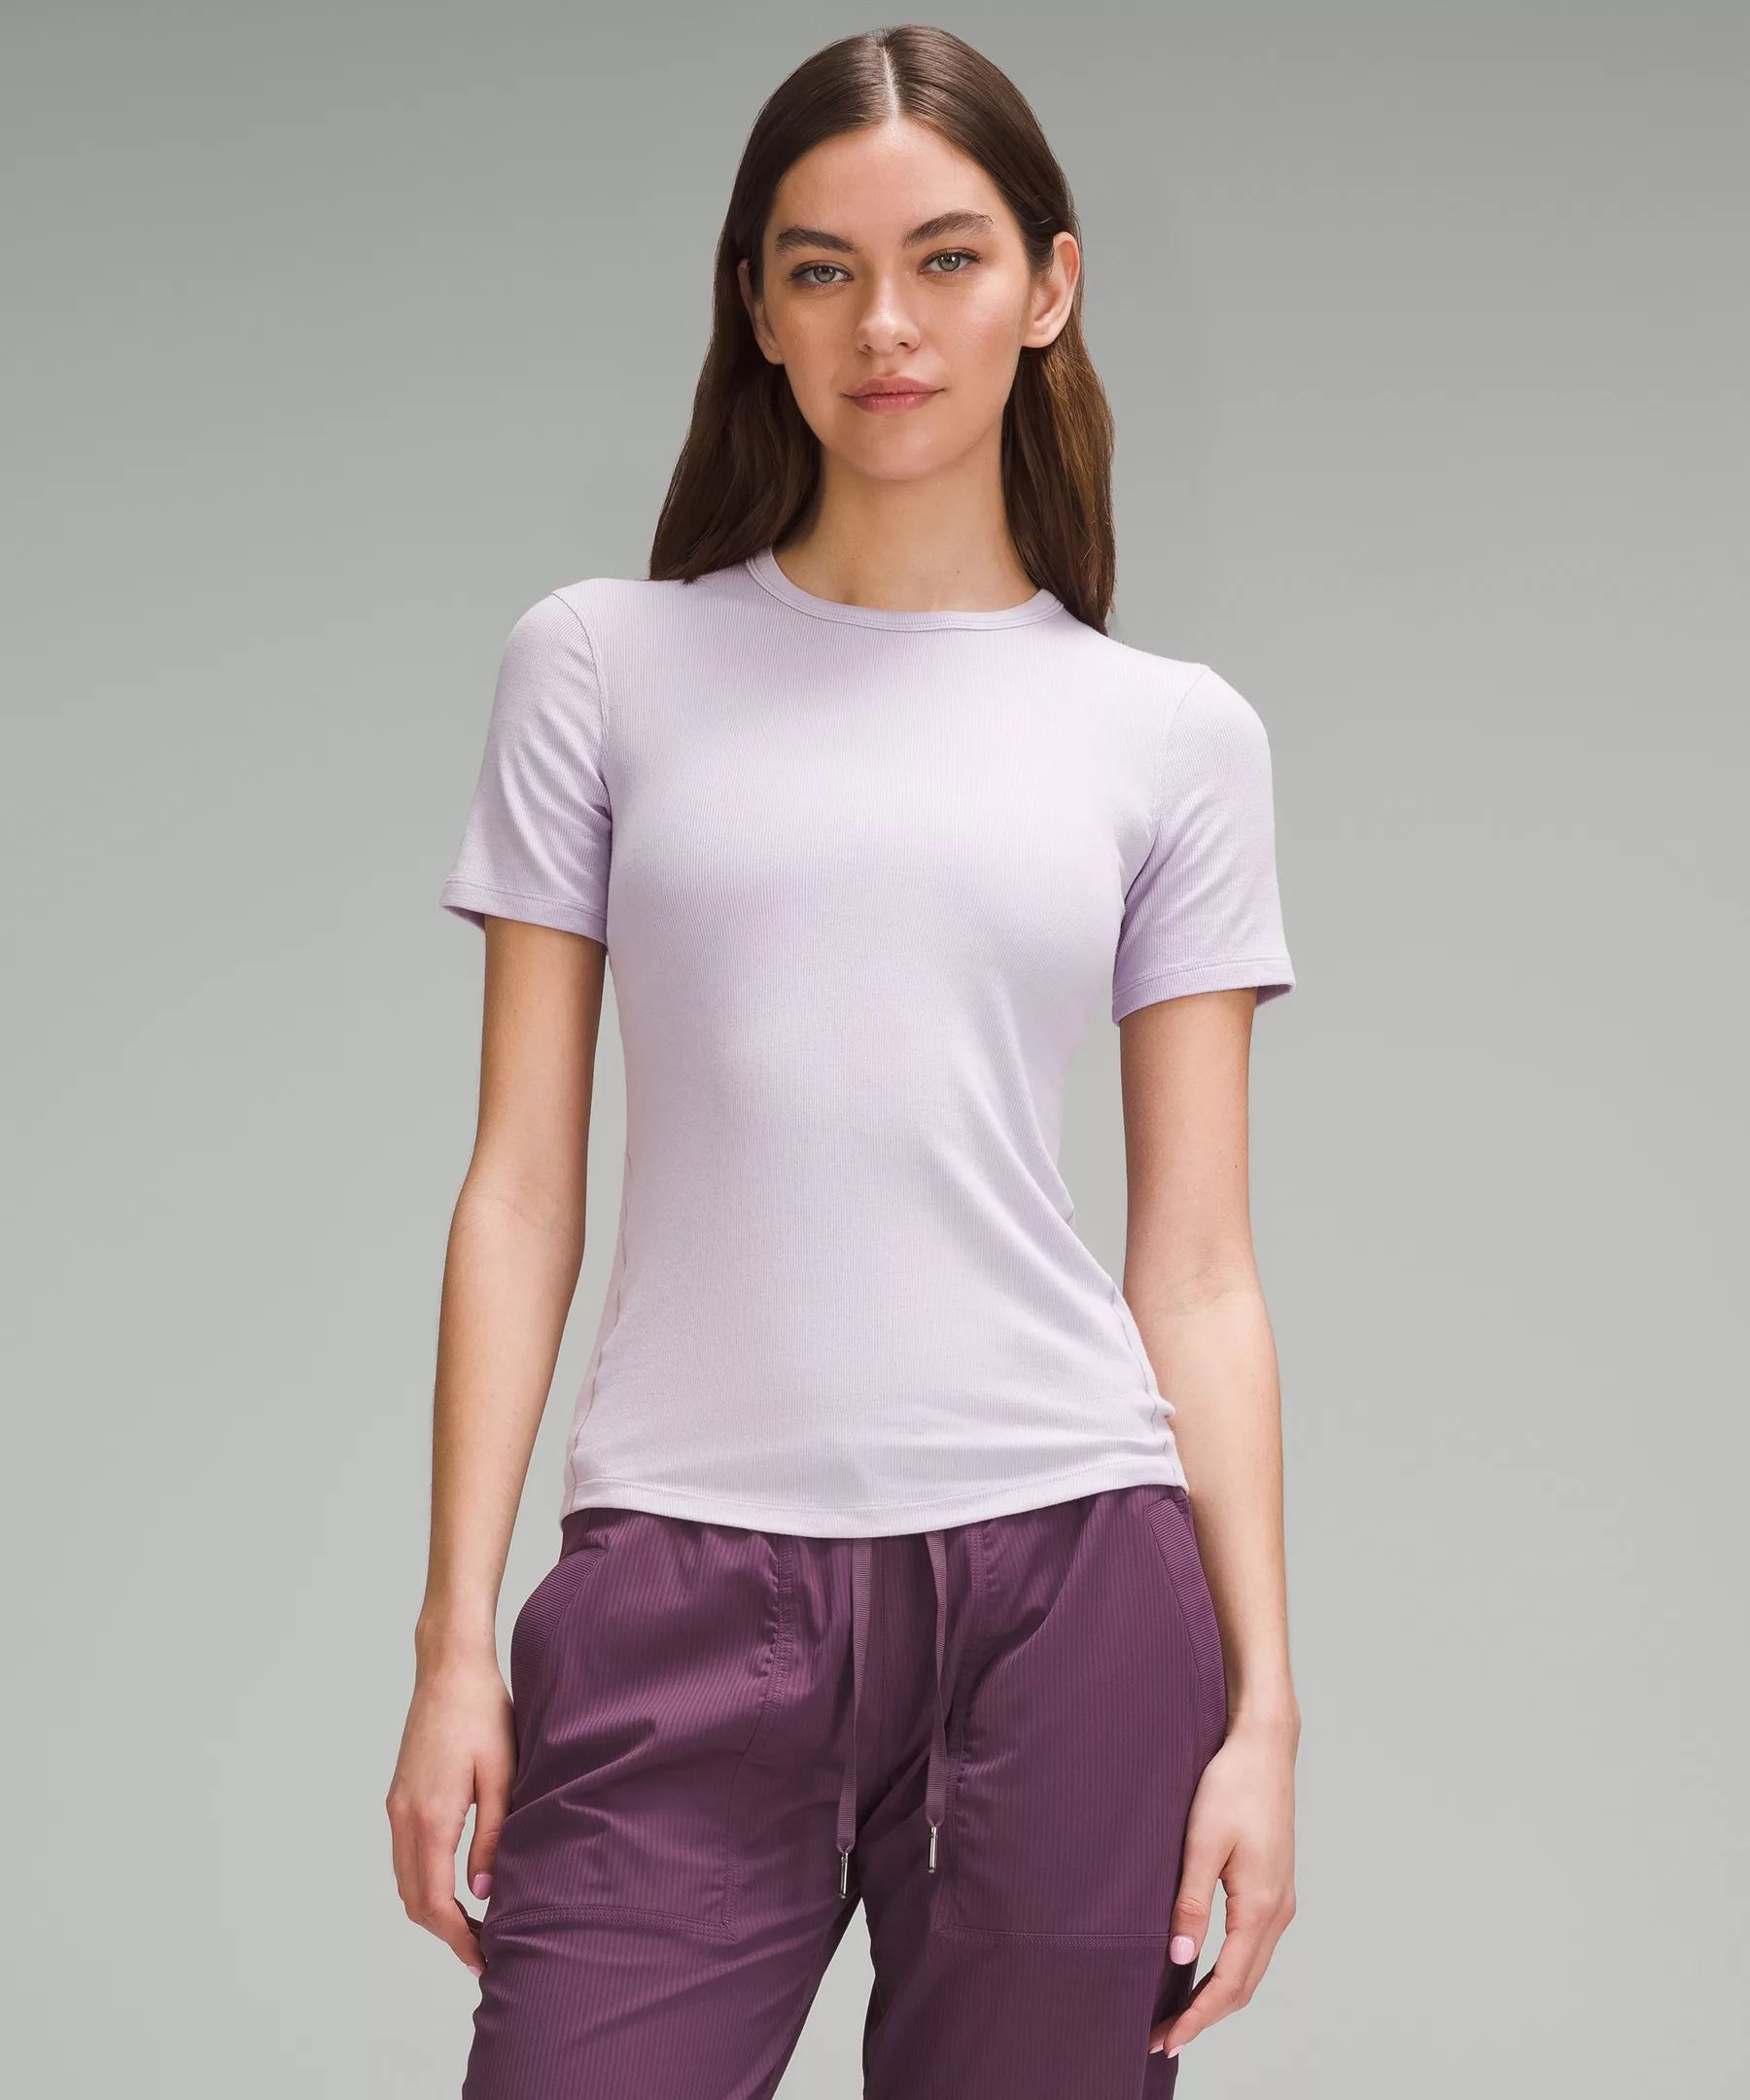 Hold Tight Short-Sleeve Shirt | Lululemon (US)